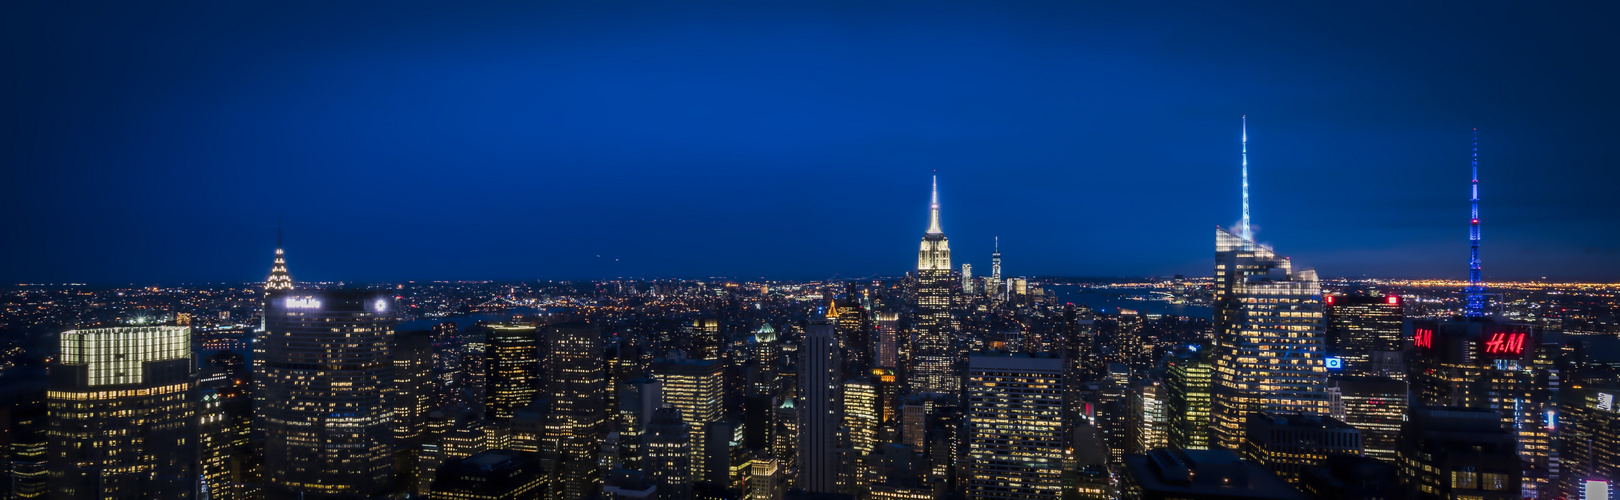 NEW YORK - blue hour from Rockefeller Center